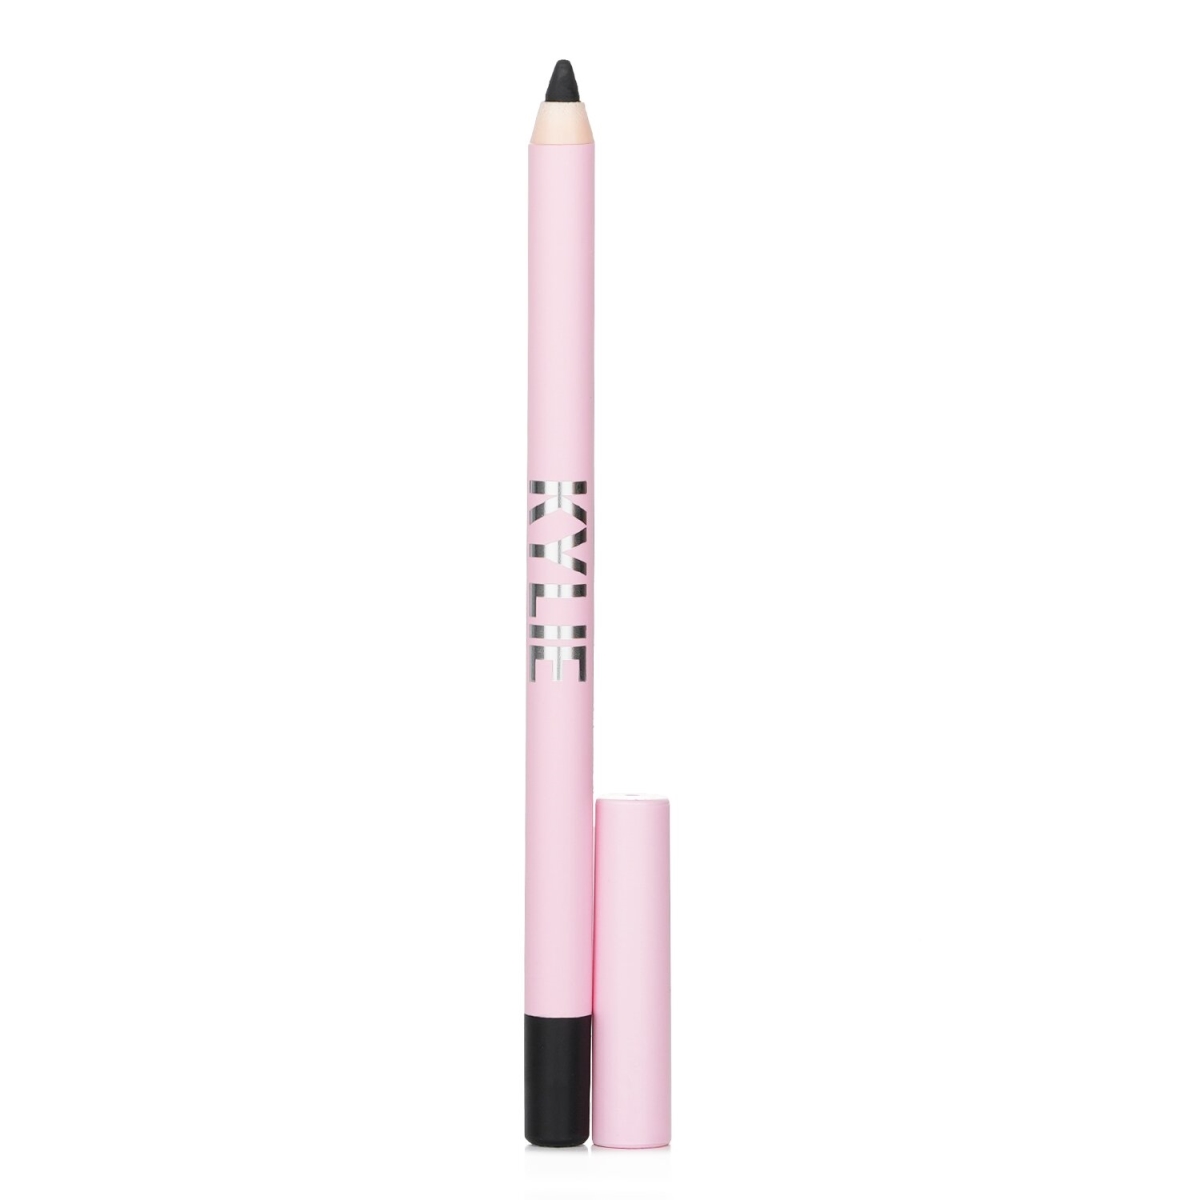 Kylie By Kylie Jenner 327232 1.2 g Kyliner Gel Eyeliner Pencil&#44; No.001 Black Matte